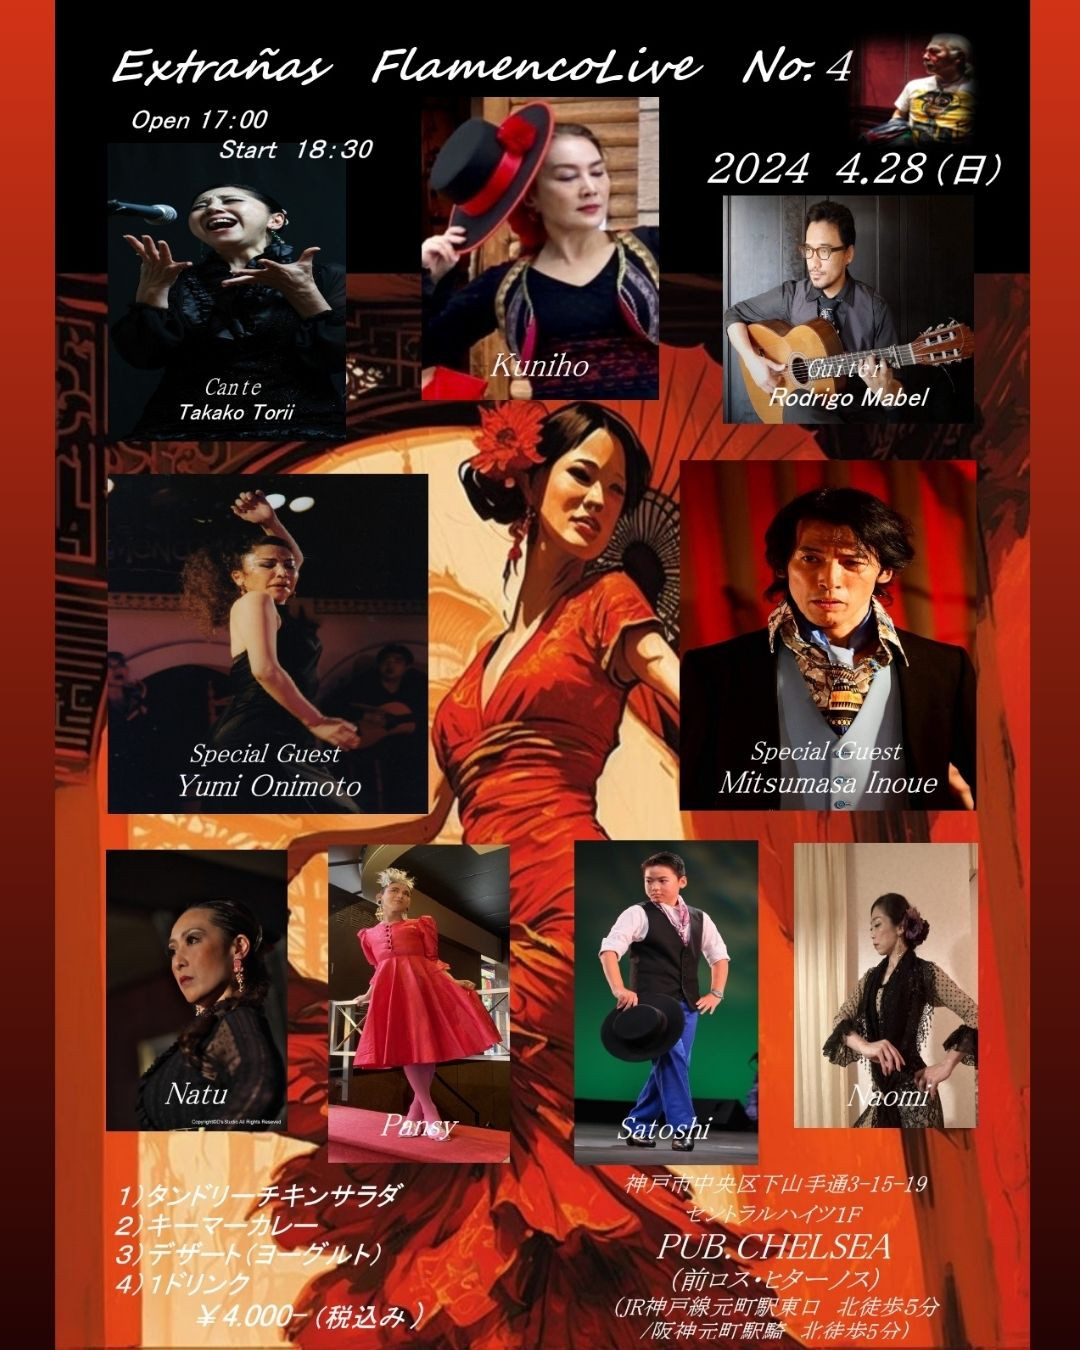 【出演】2024年4月28日(日) Extrañas Flamenco Live vol.4 に出演いたします